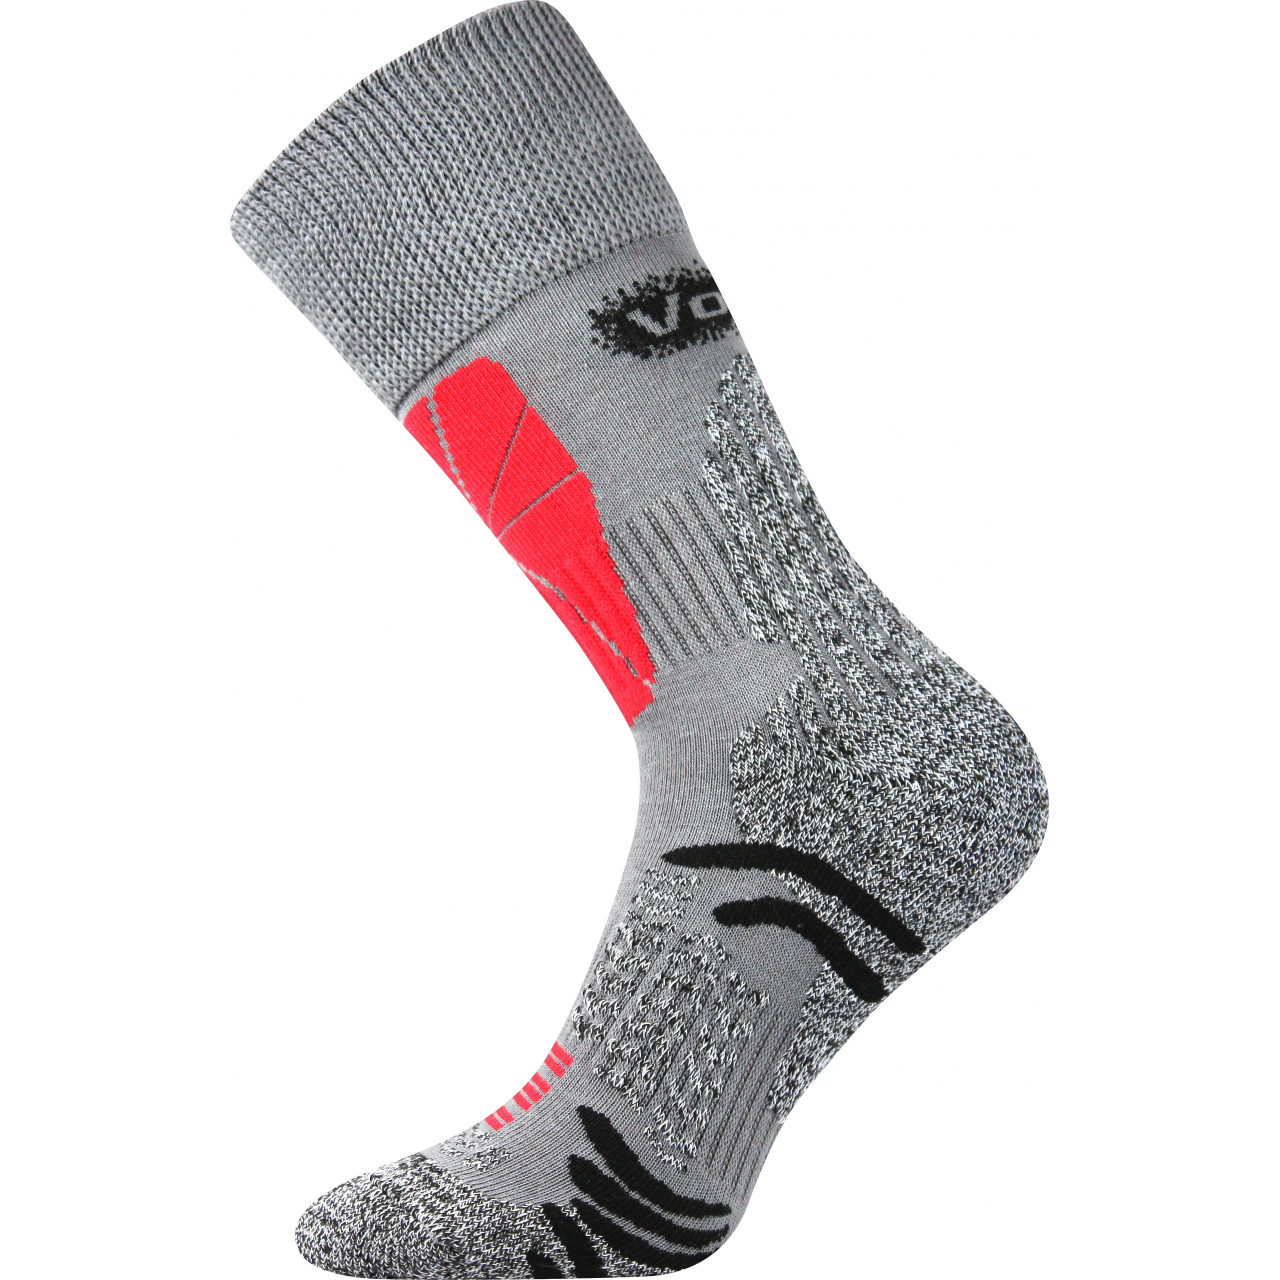 Ponožky sportovní unisex Voxx Solution - světle šedé, 43-46